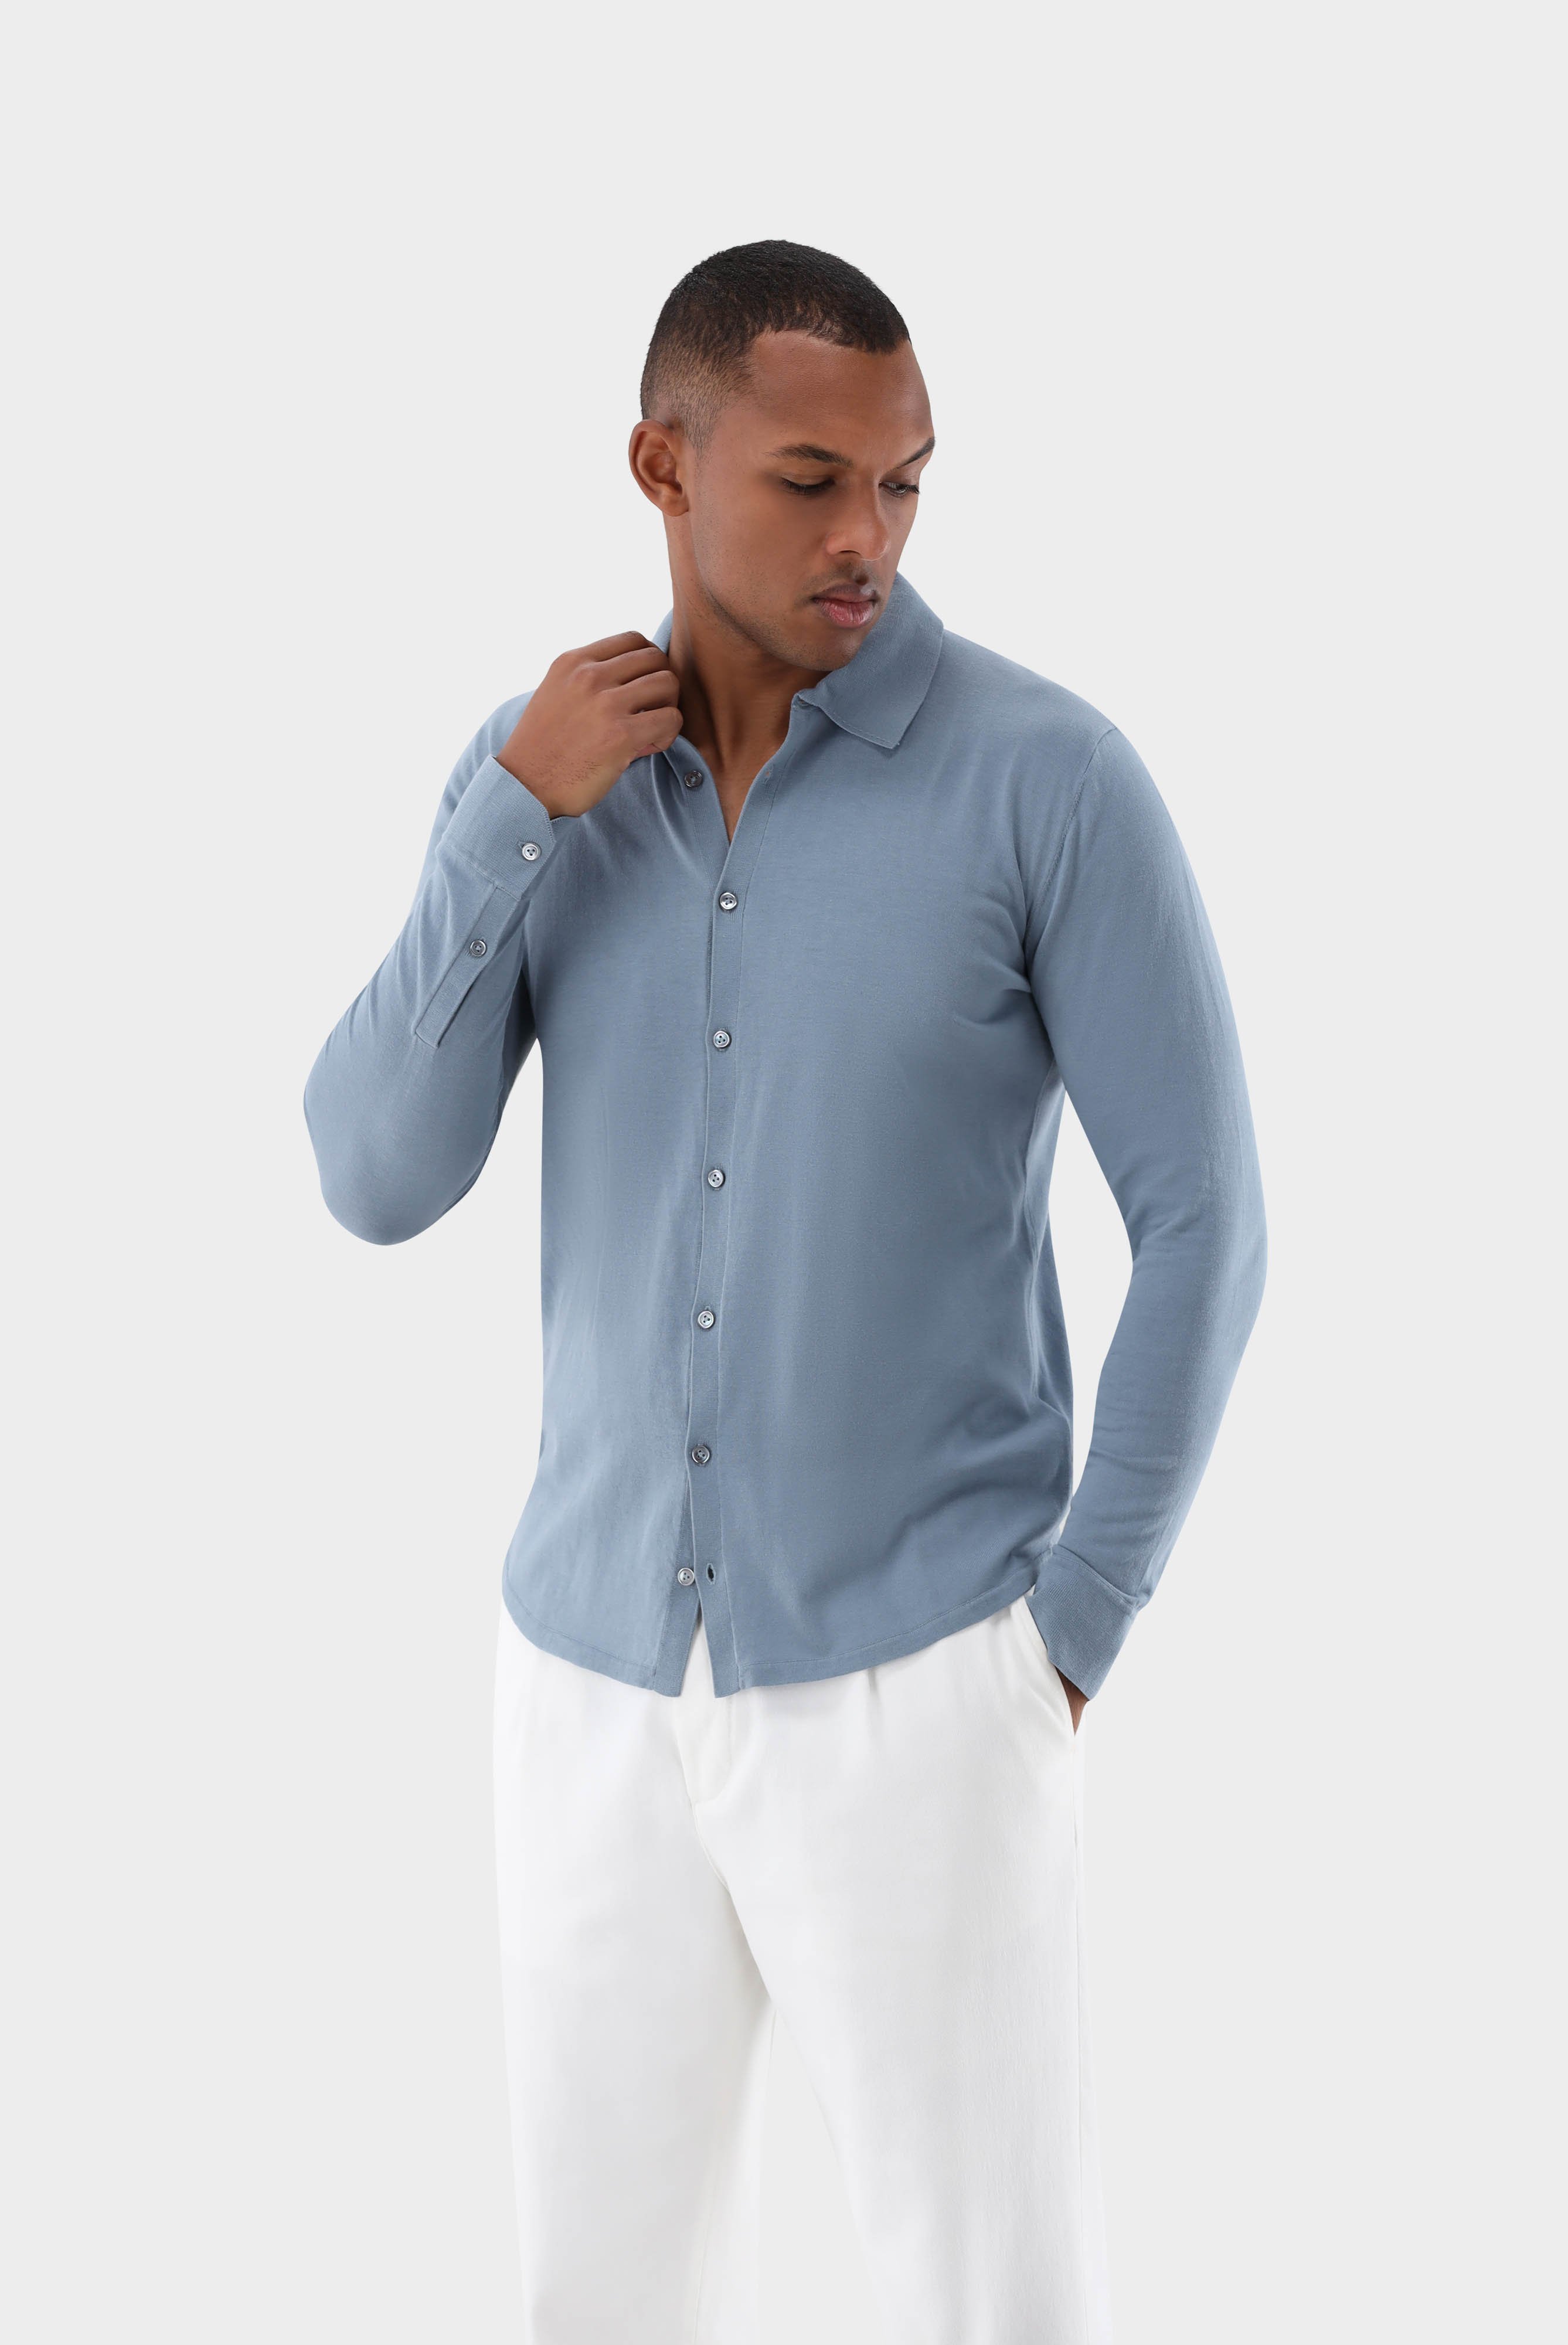 Bügelleichte Hemden+Strick Hemd aus Air Cotton+82.8611..S00174.730.S